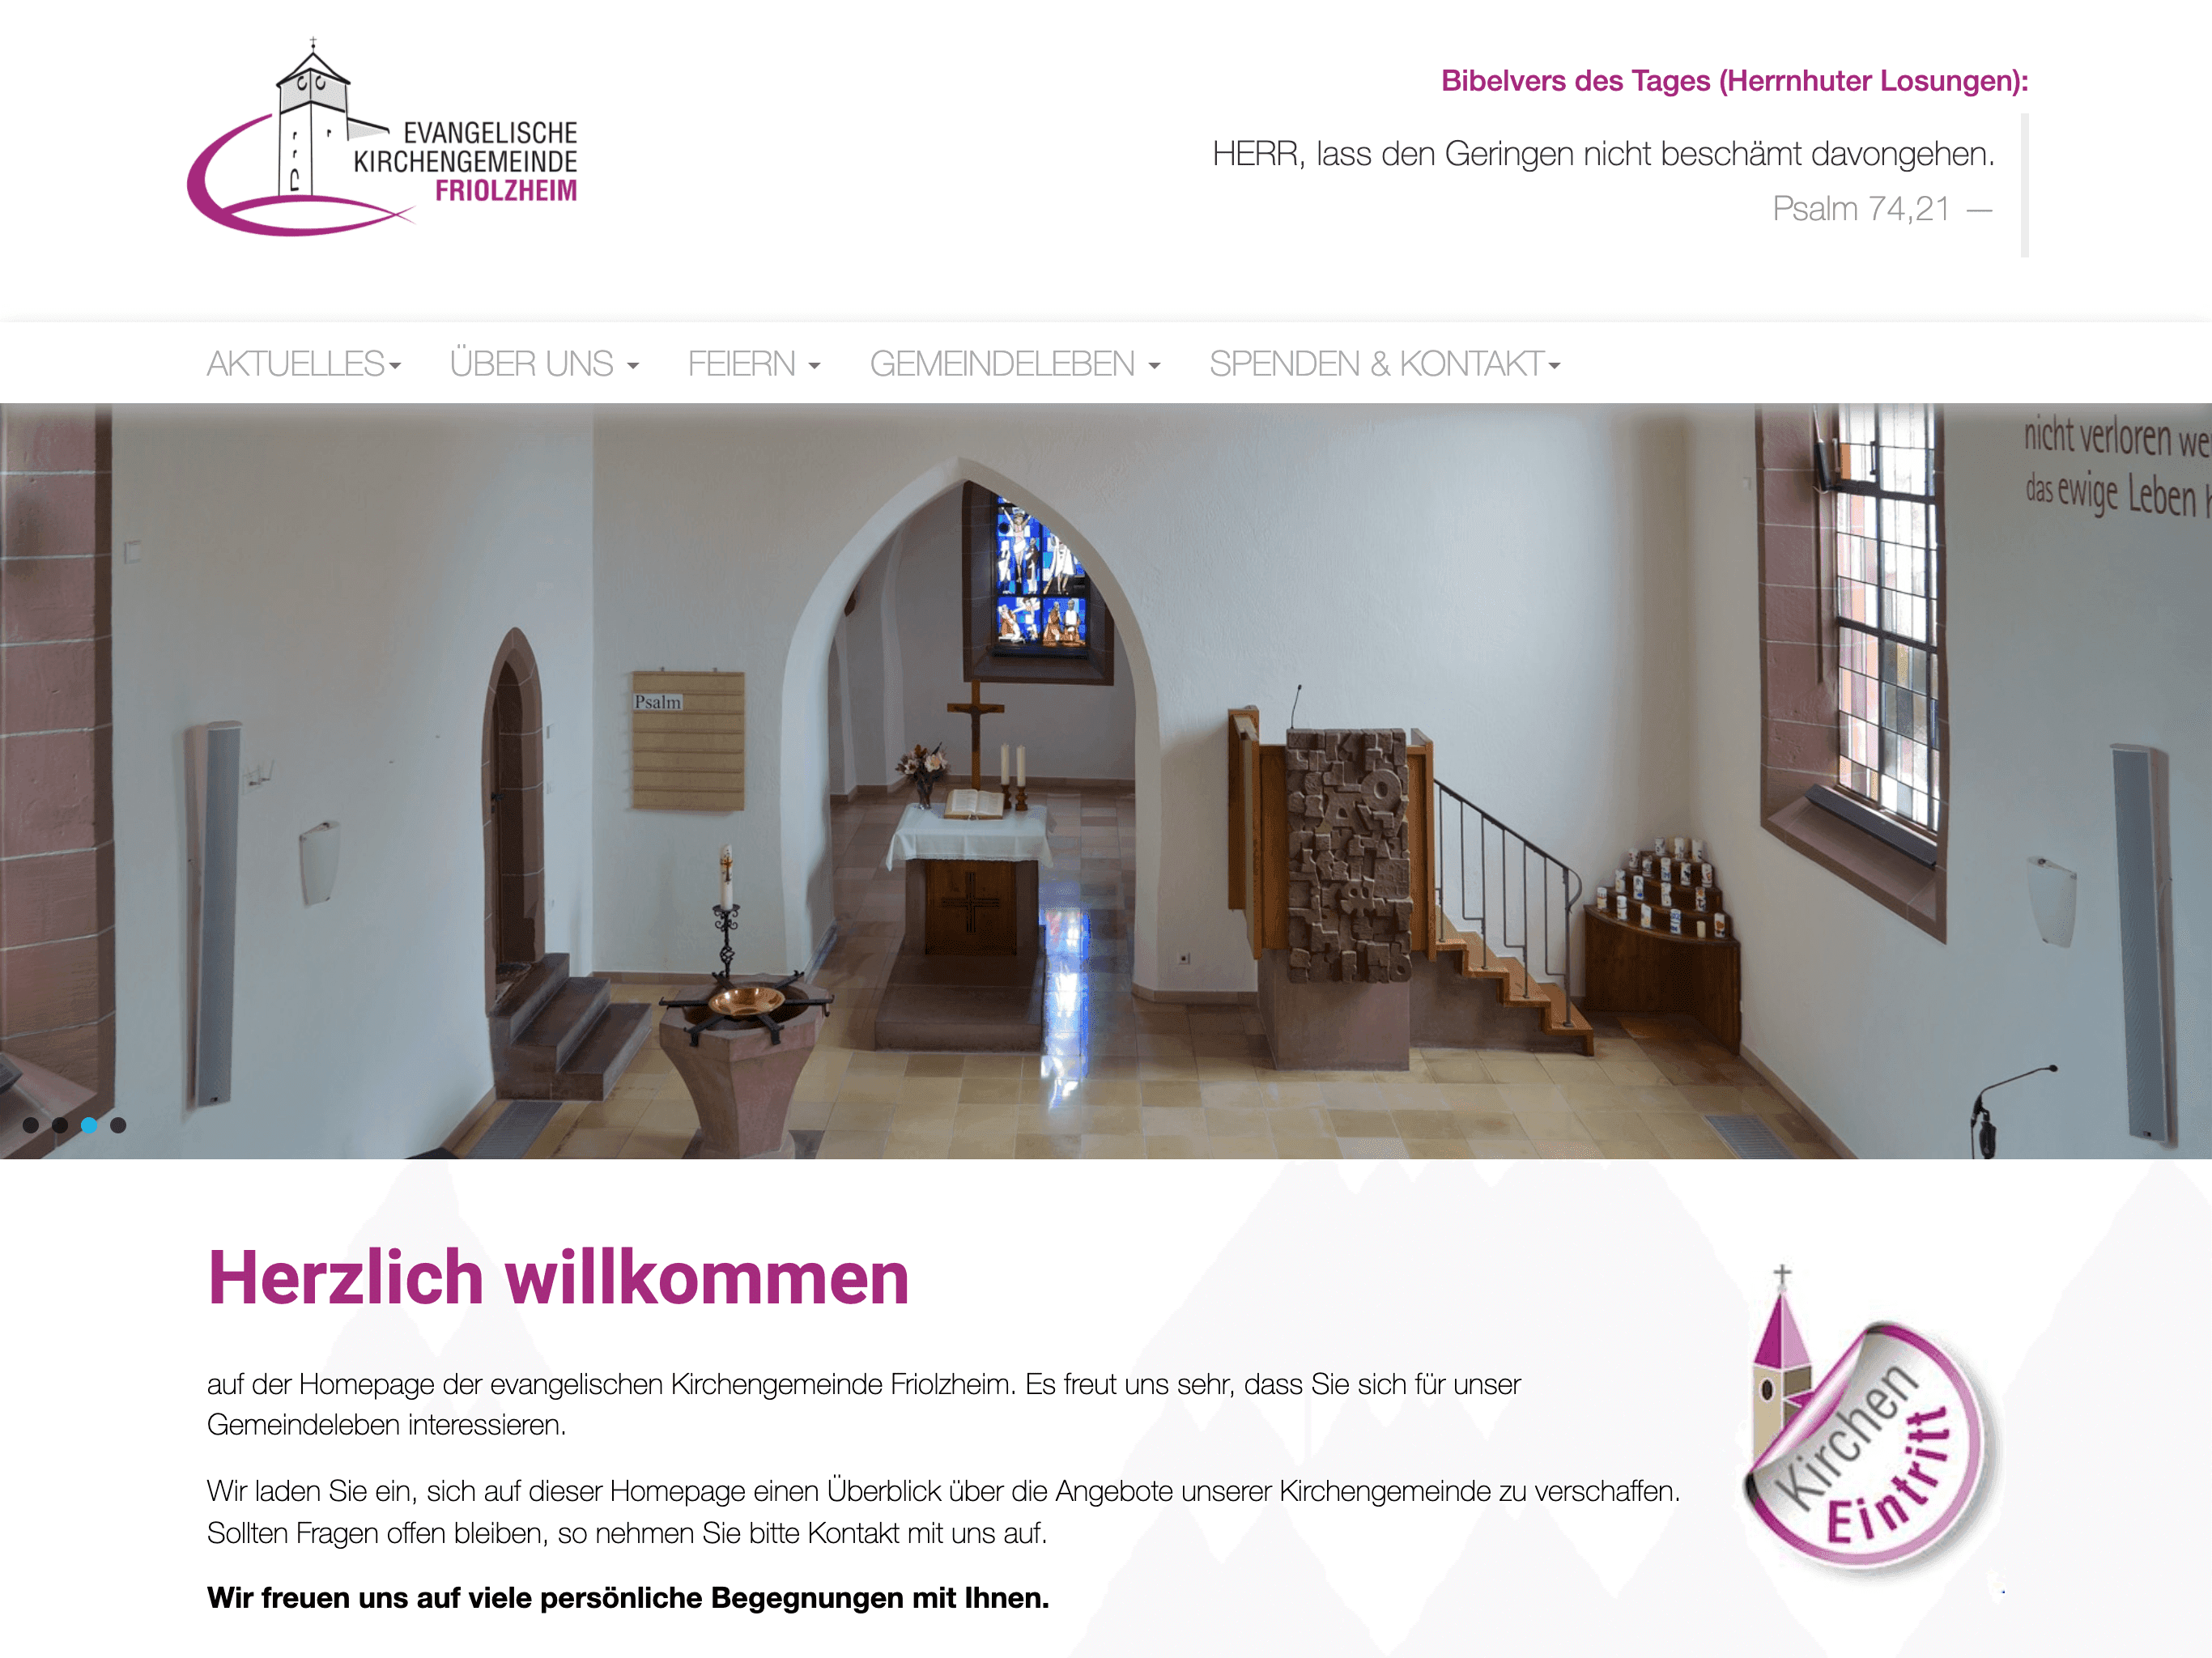 Evangelische Kirchengemeinde Friolzheim